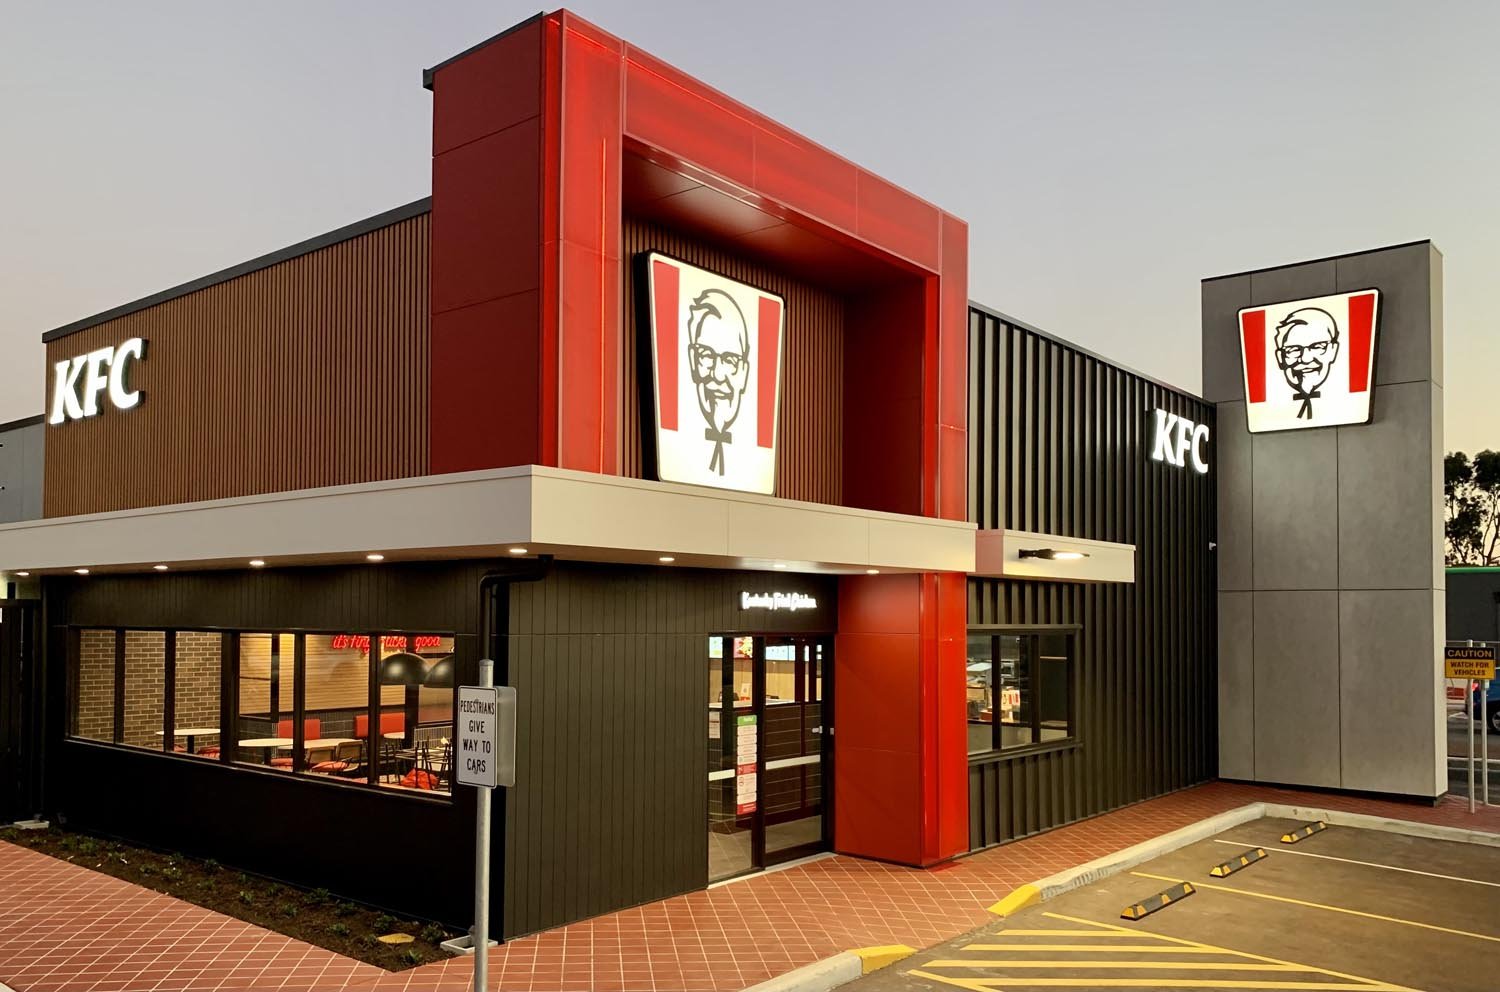 architecture-kfc-restaurant-design-murdoch-western-australia-designer-architect-commercial.jpg